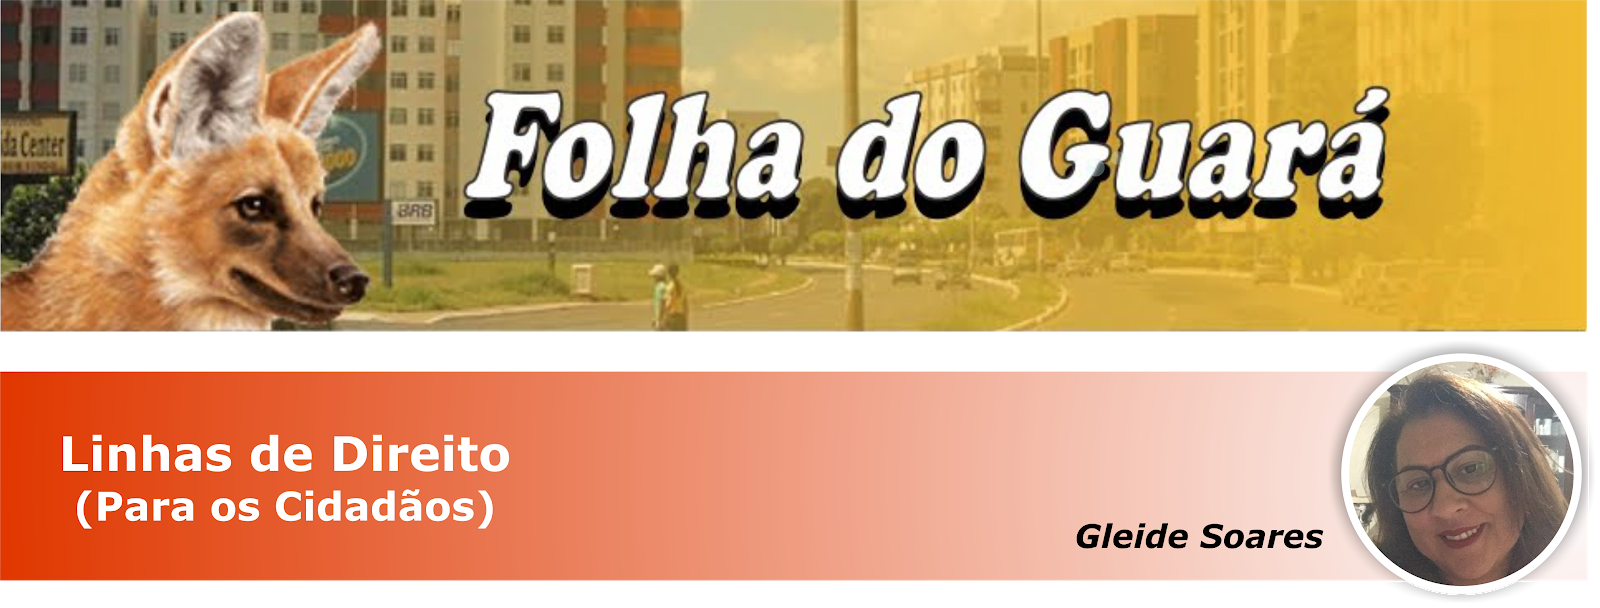 Folha do Guará - Linhas de Direito (Para o Cidadão) - Gleide Soares